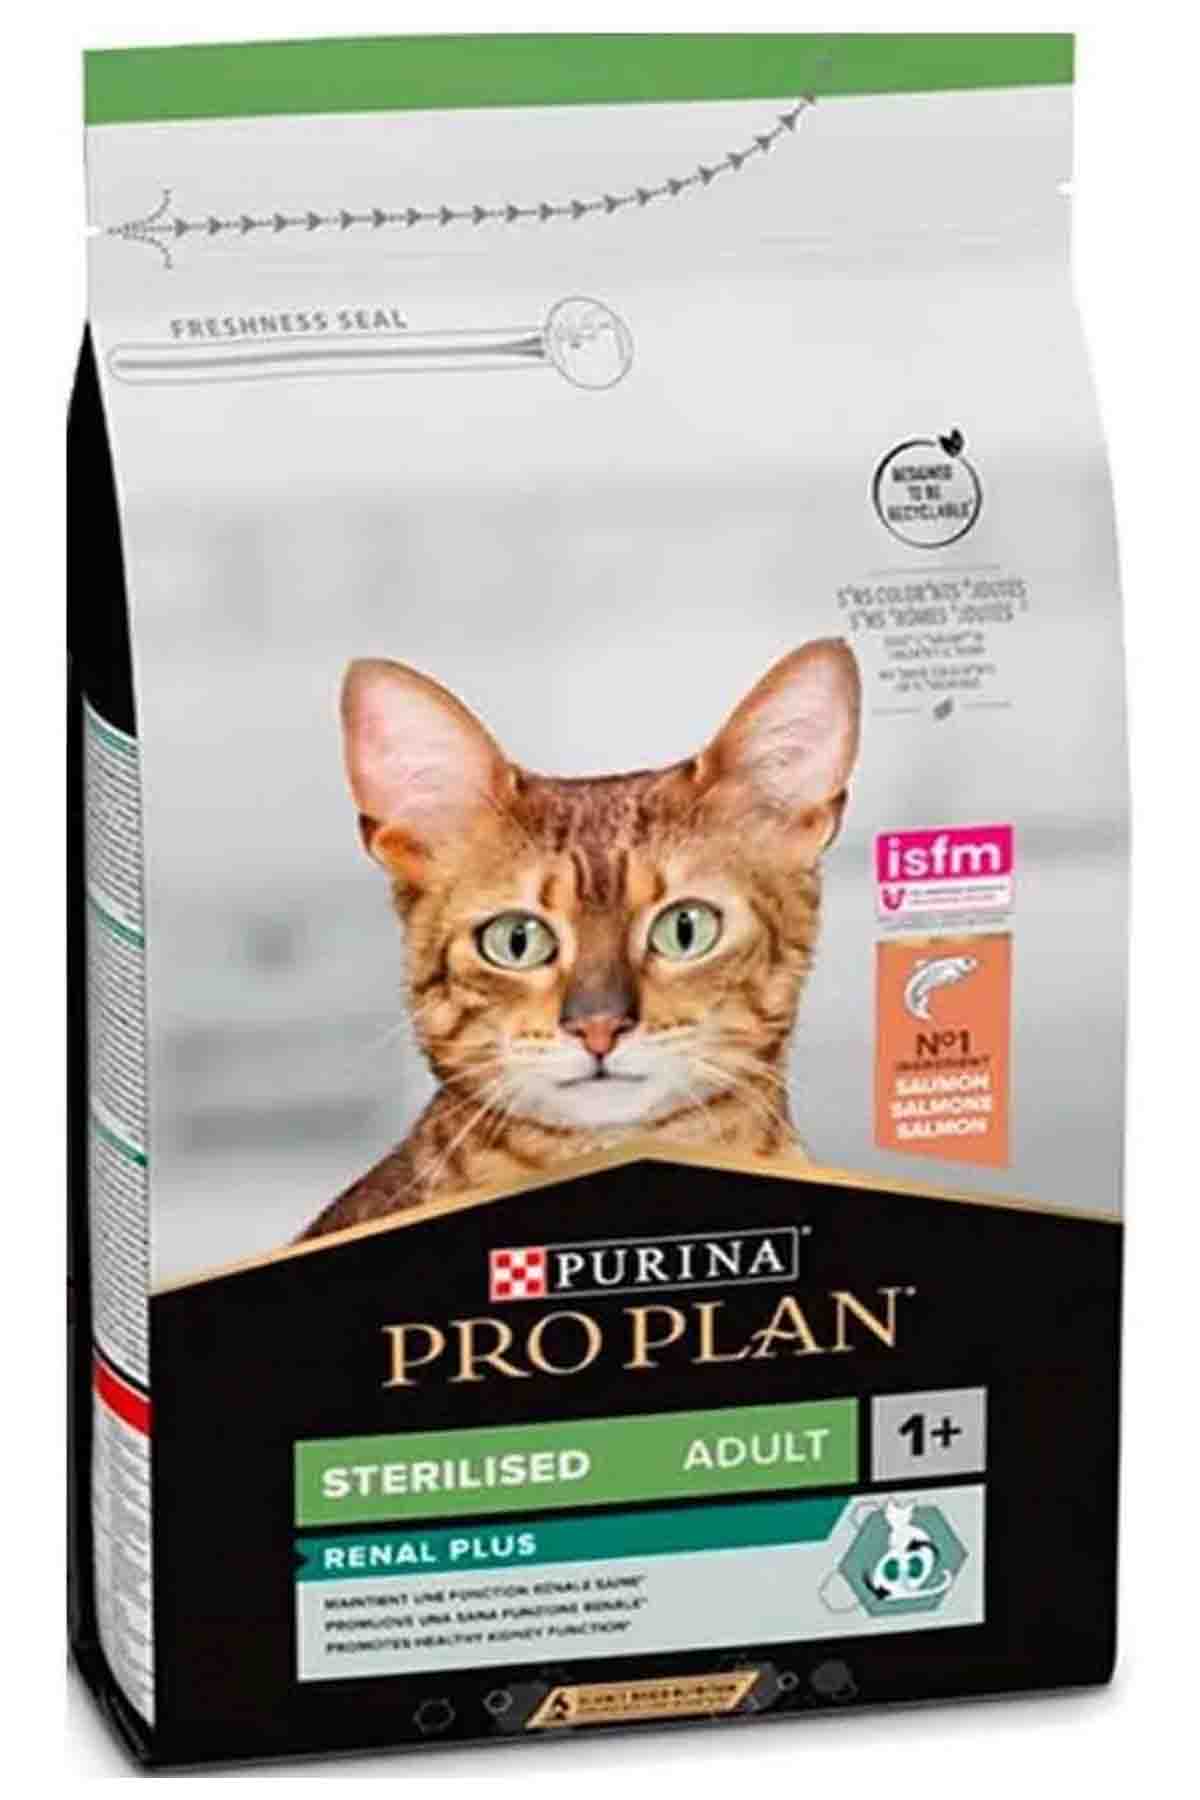 Pro Plan Somonlu Kısırlaştırılmış Kedi Maması 3kg